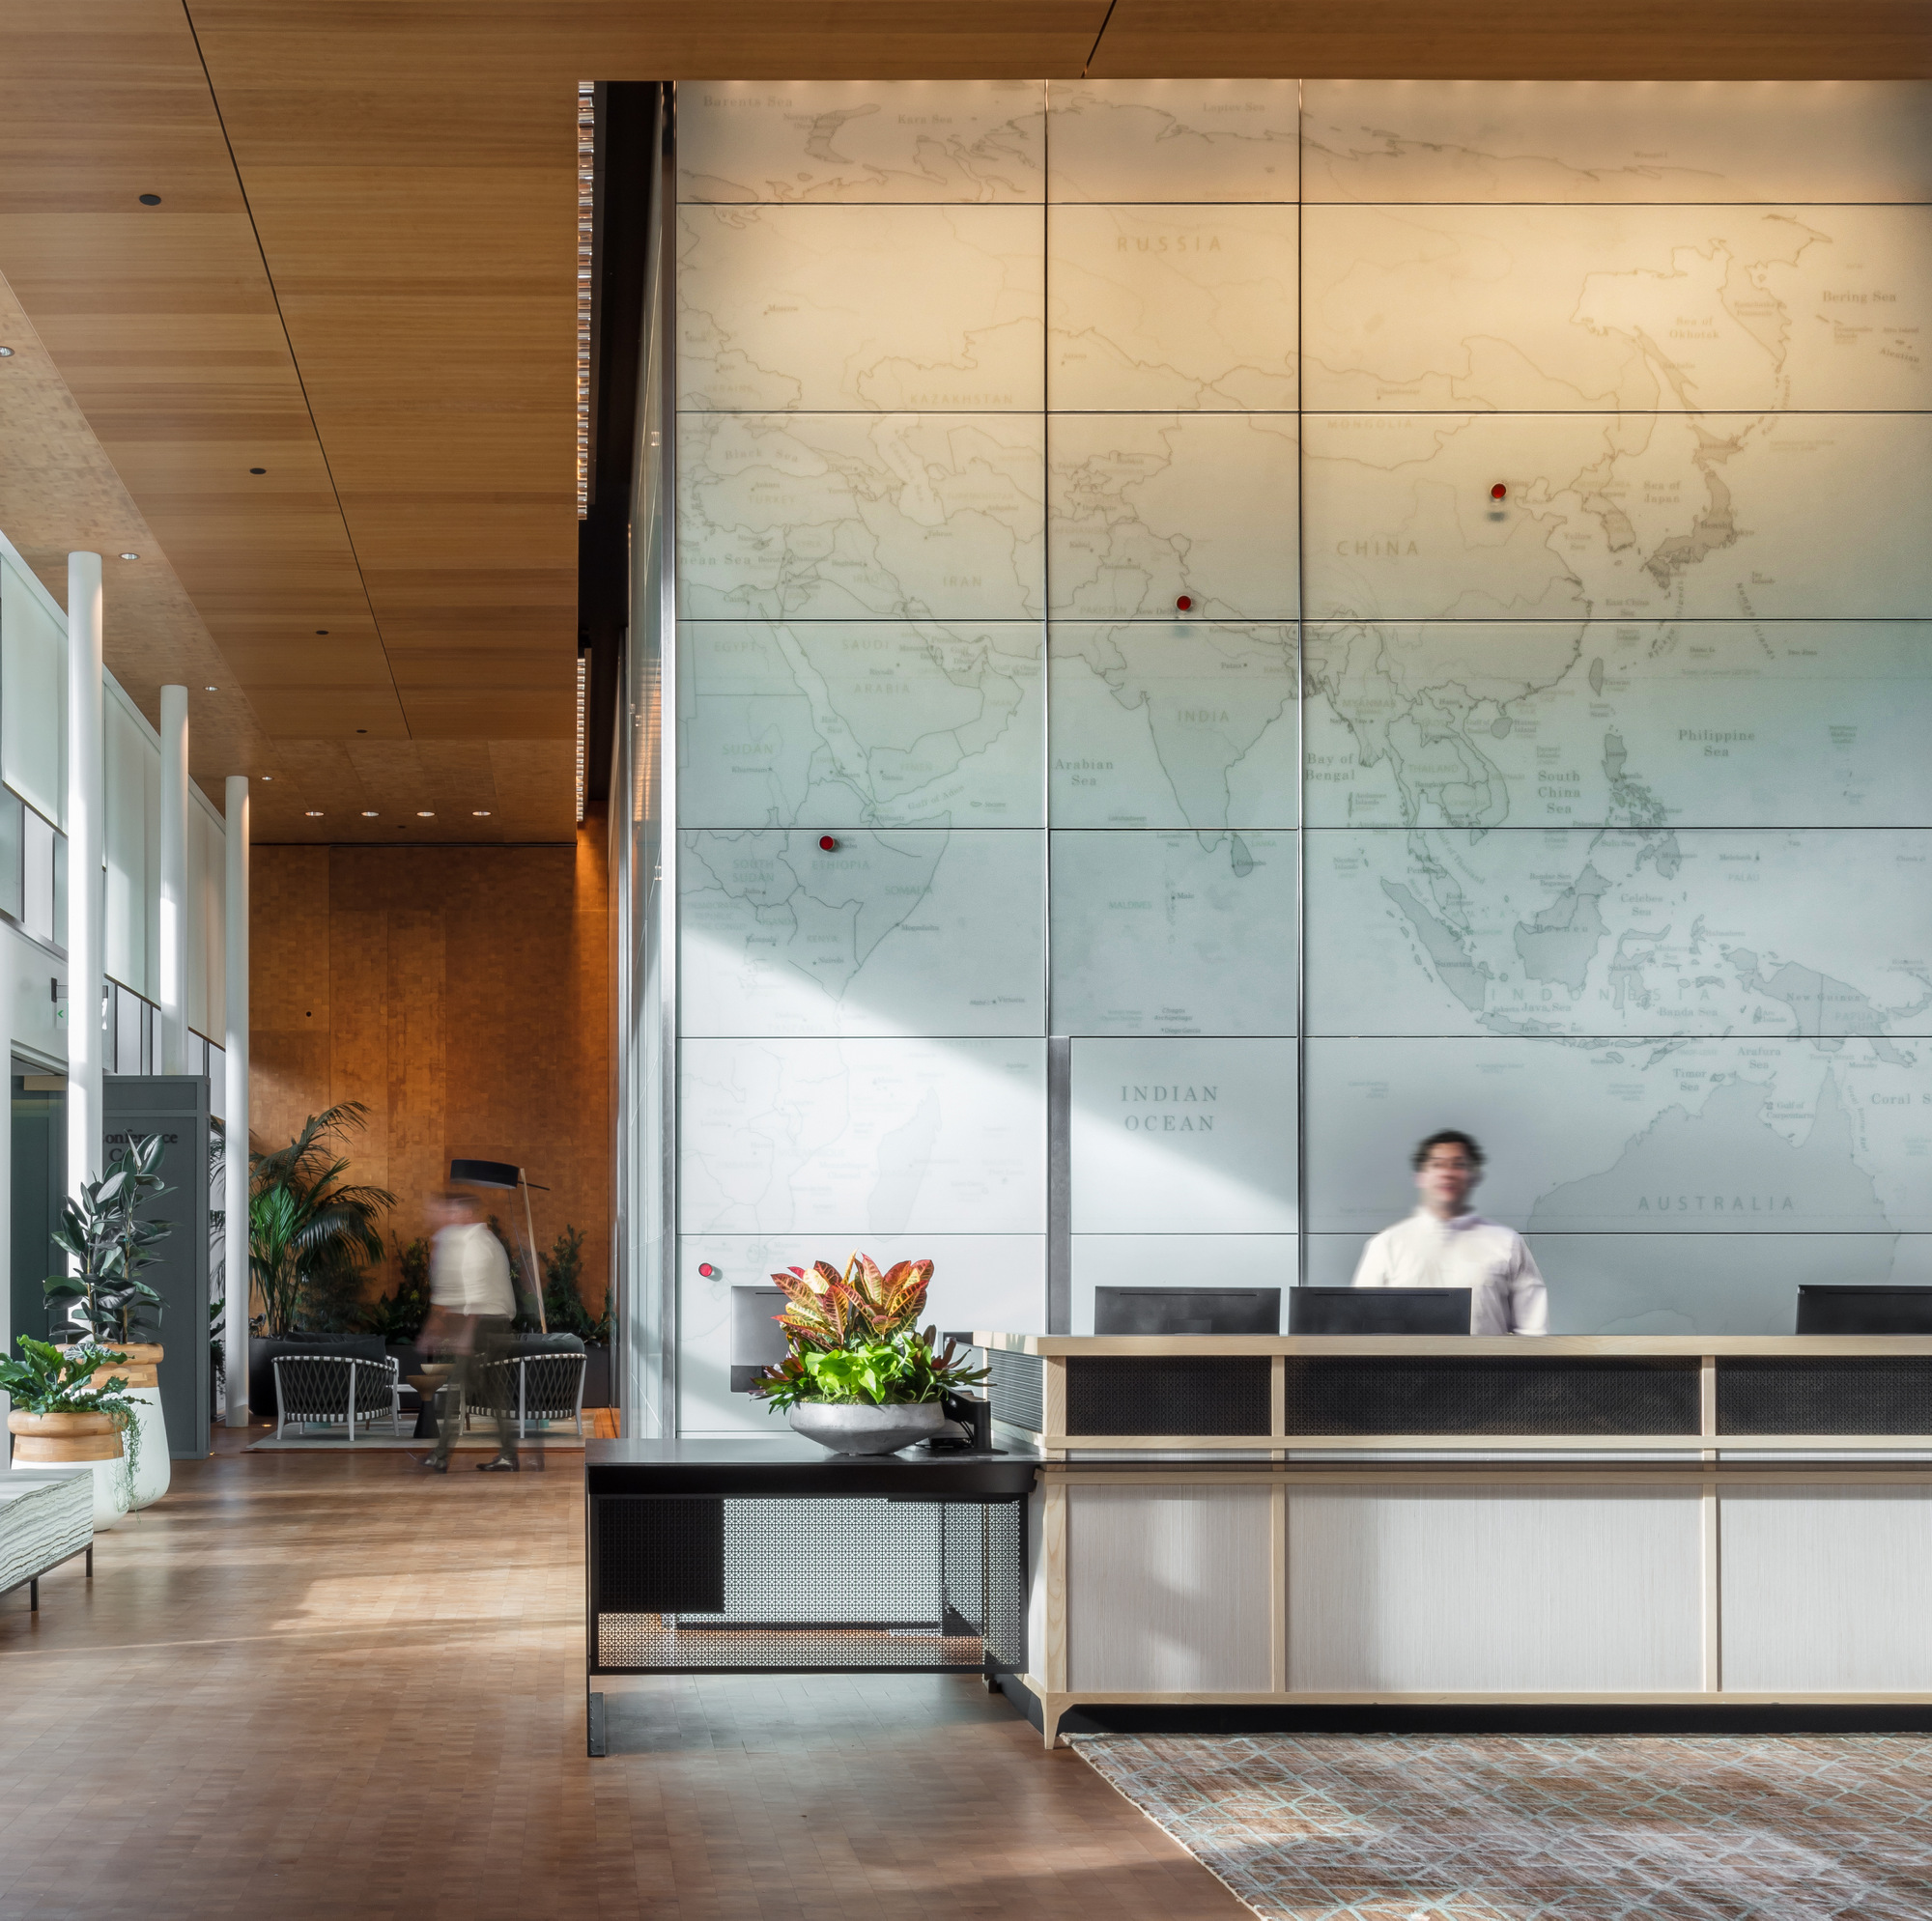 西雅图全球非营利基金会办公室|ART-Arrakis | 建筑室内设计的创新与灵感